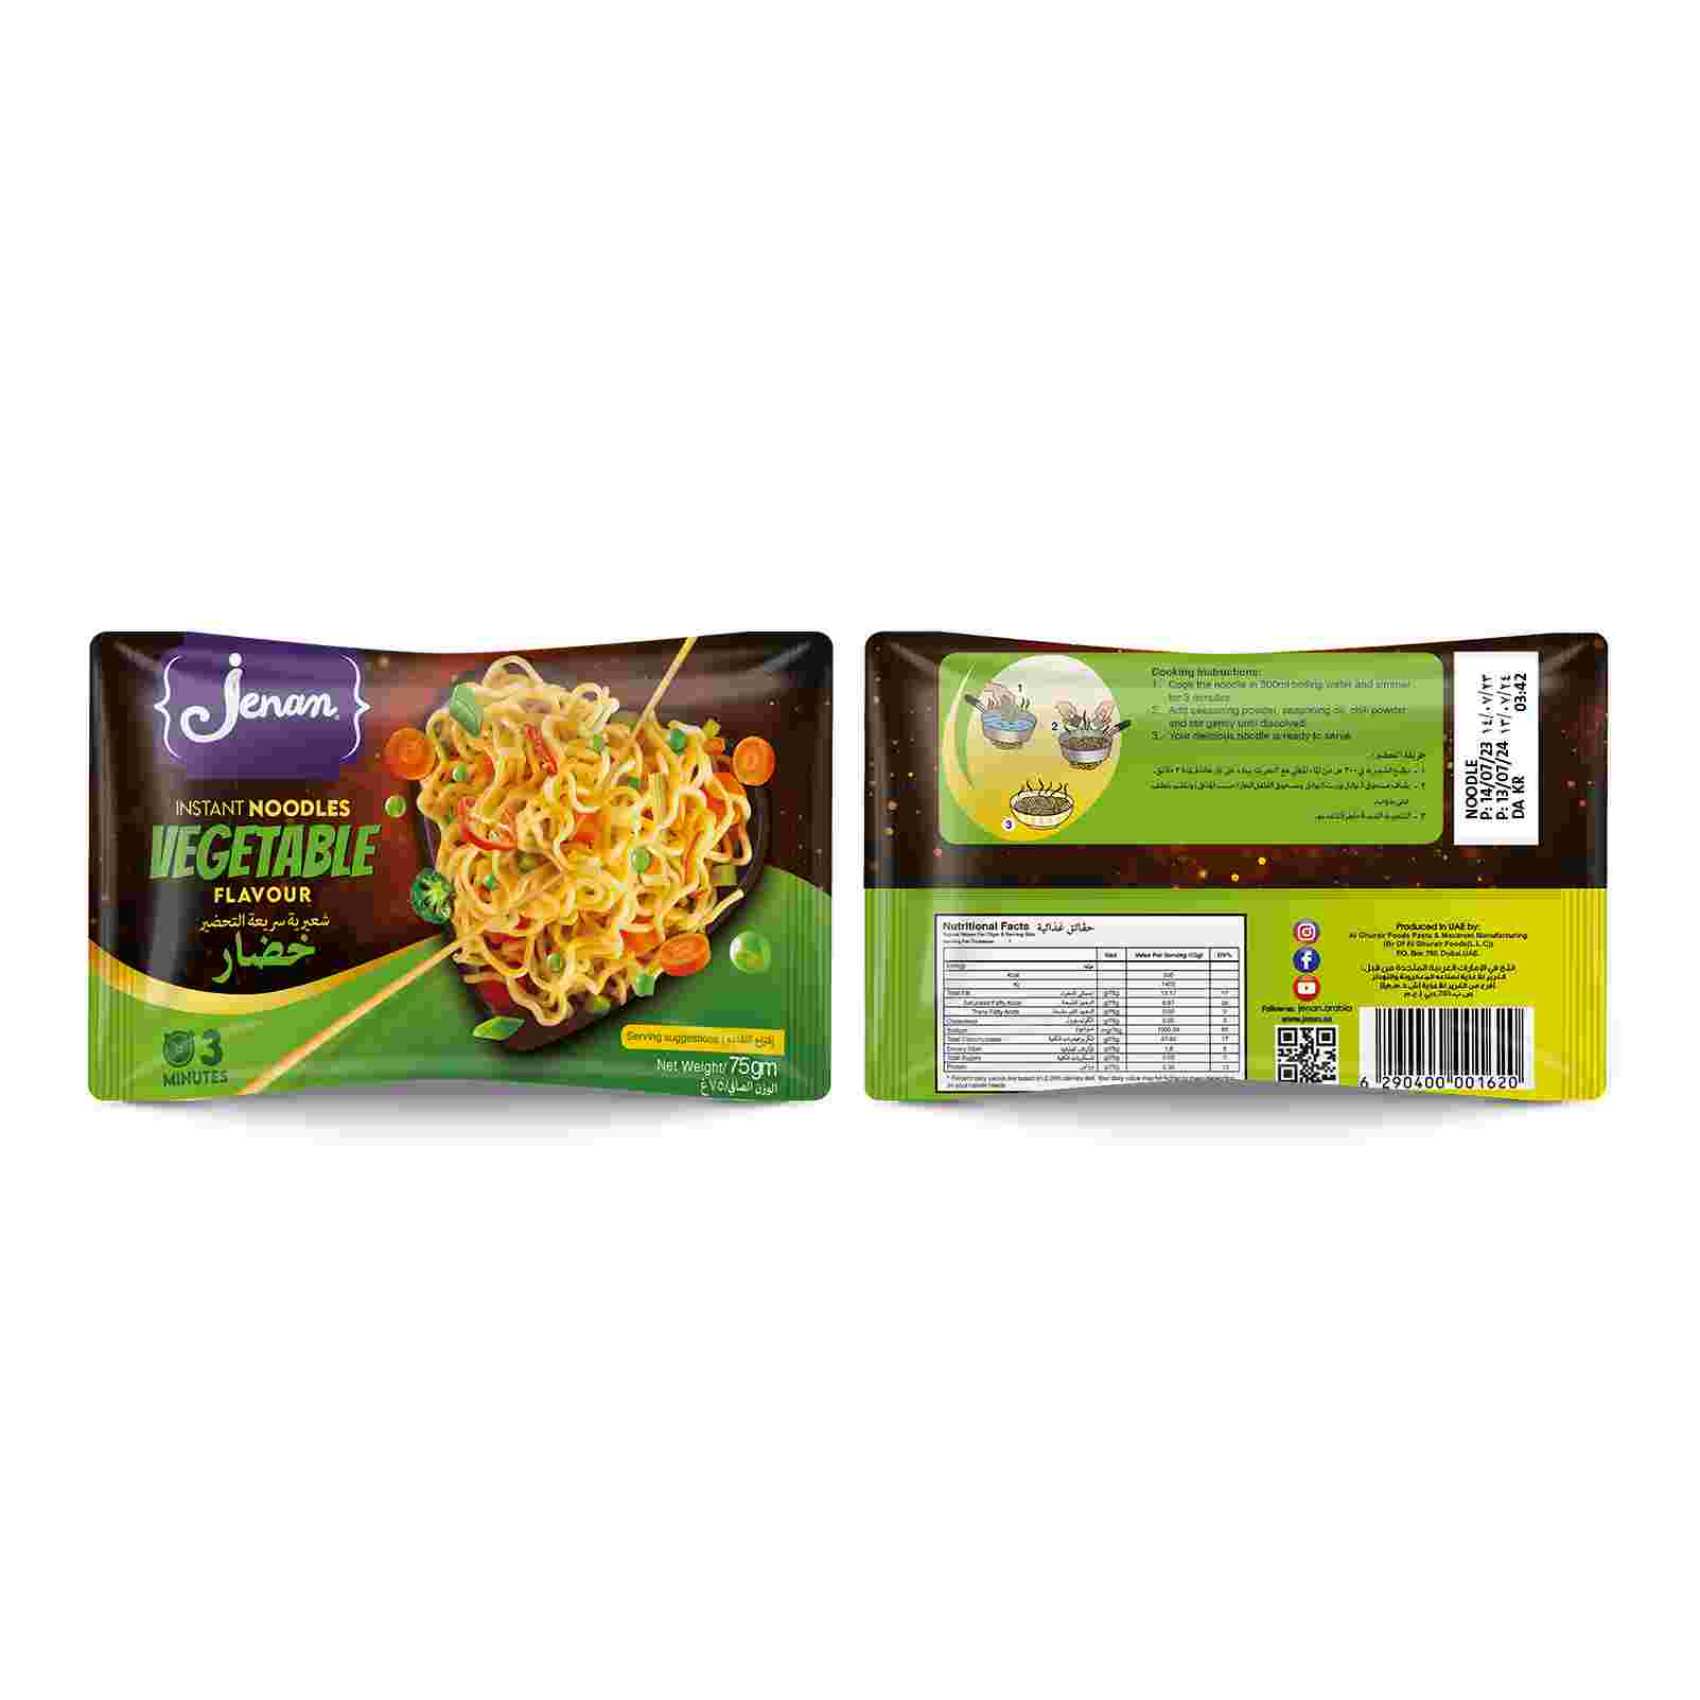 Jenan Instant Noodles Vegetable Flavour 75g